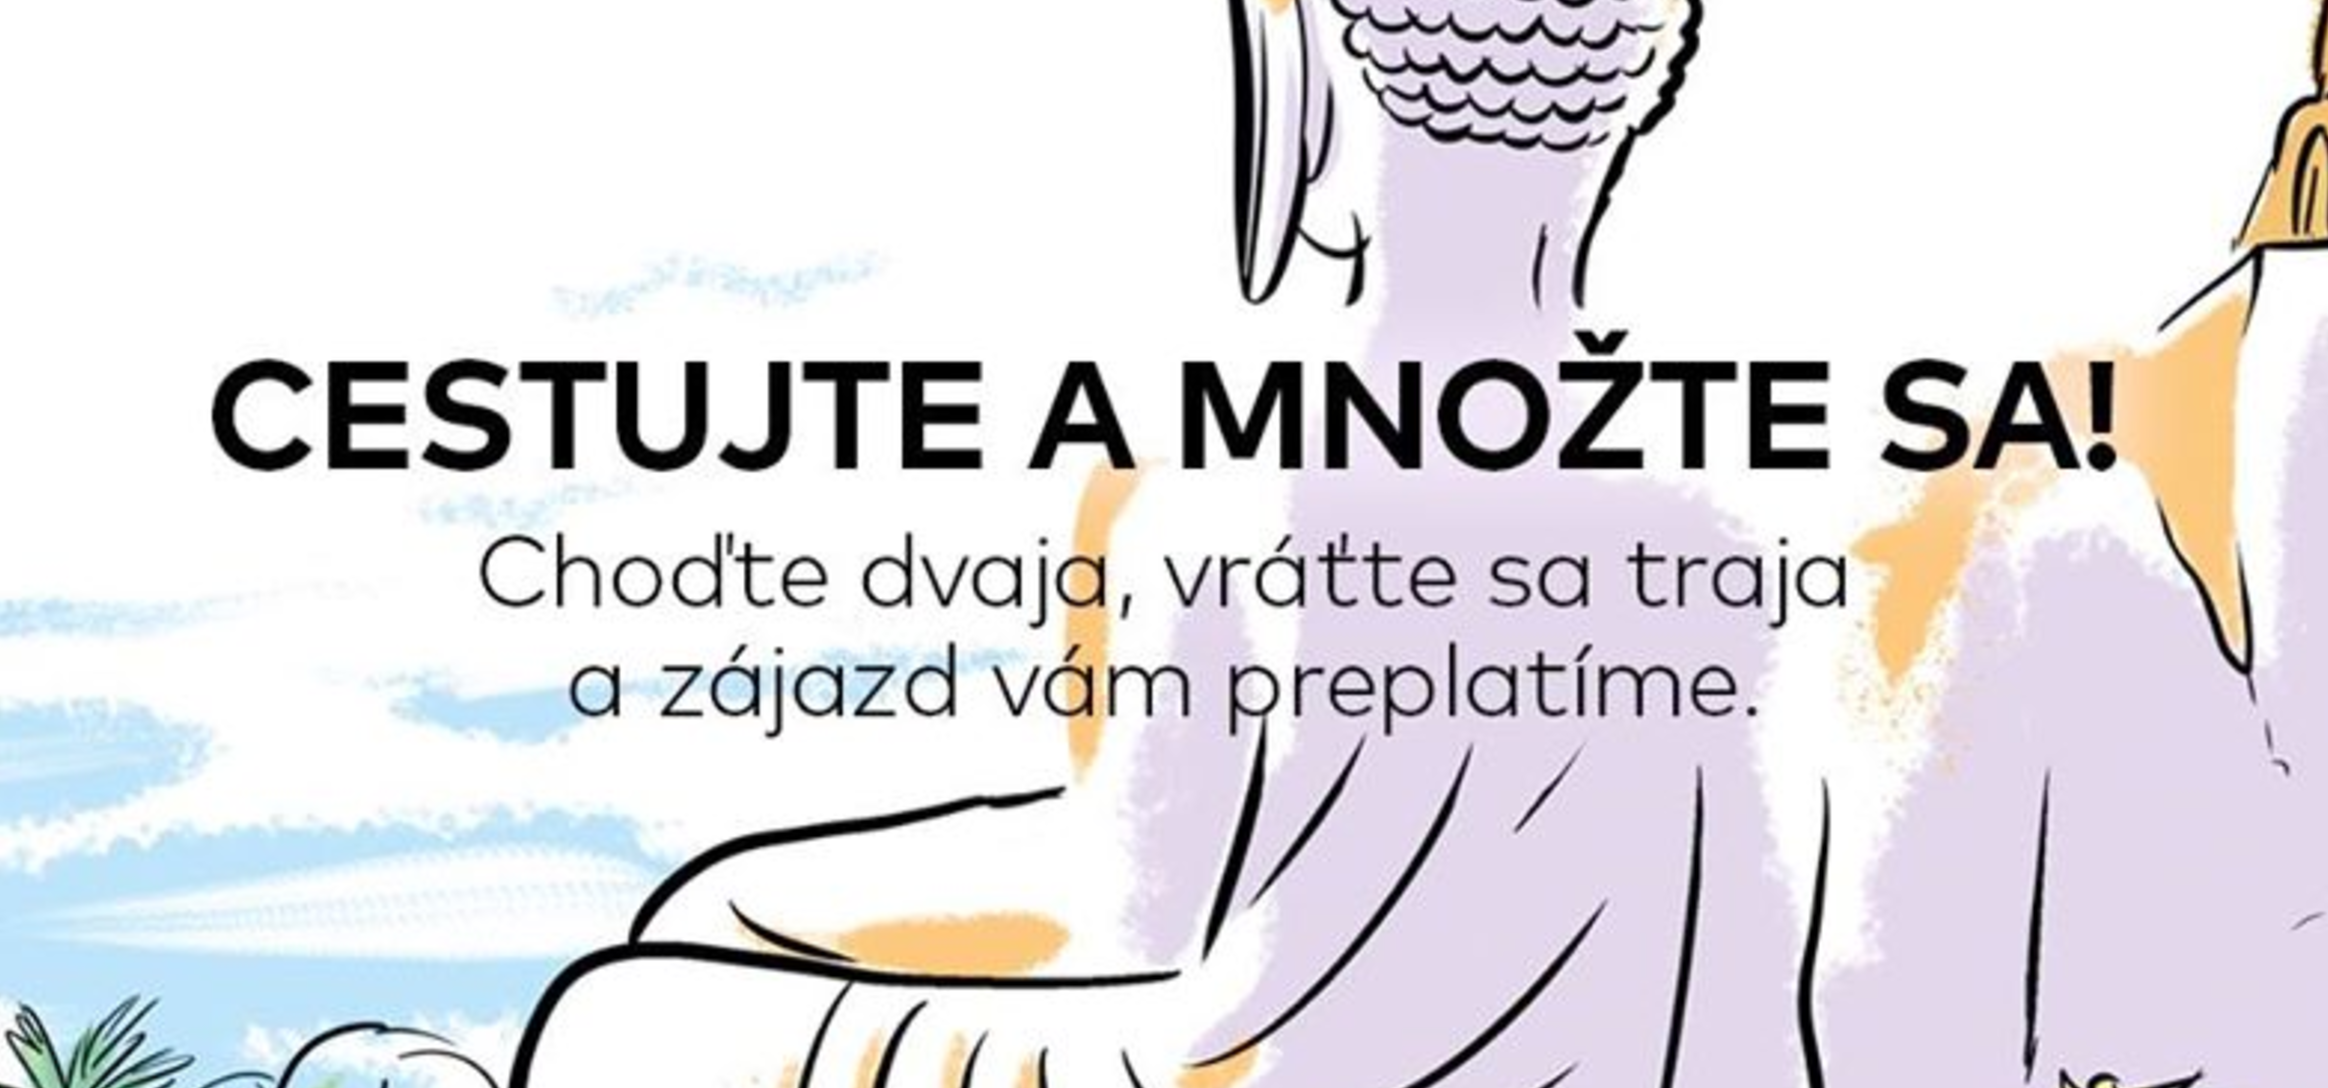 Slovenská cestovná kancelária vám preplatí polovicu dovolenky, ak na nej splodíte dieťa. ide o super nápad, ako zvýšiť pôrodnosť